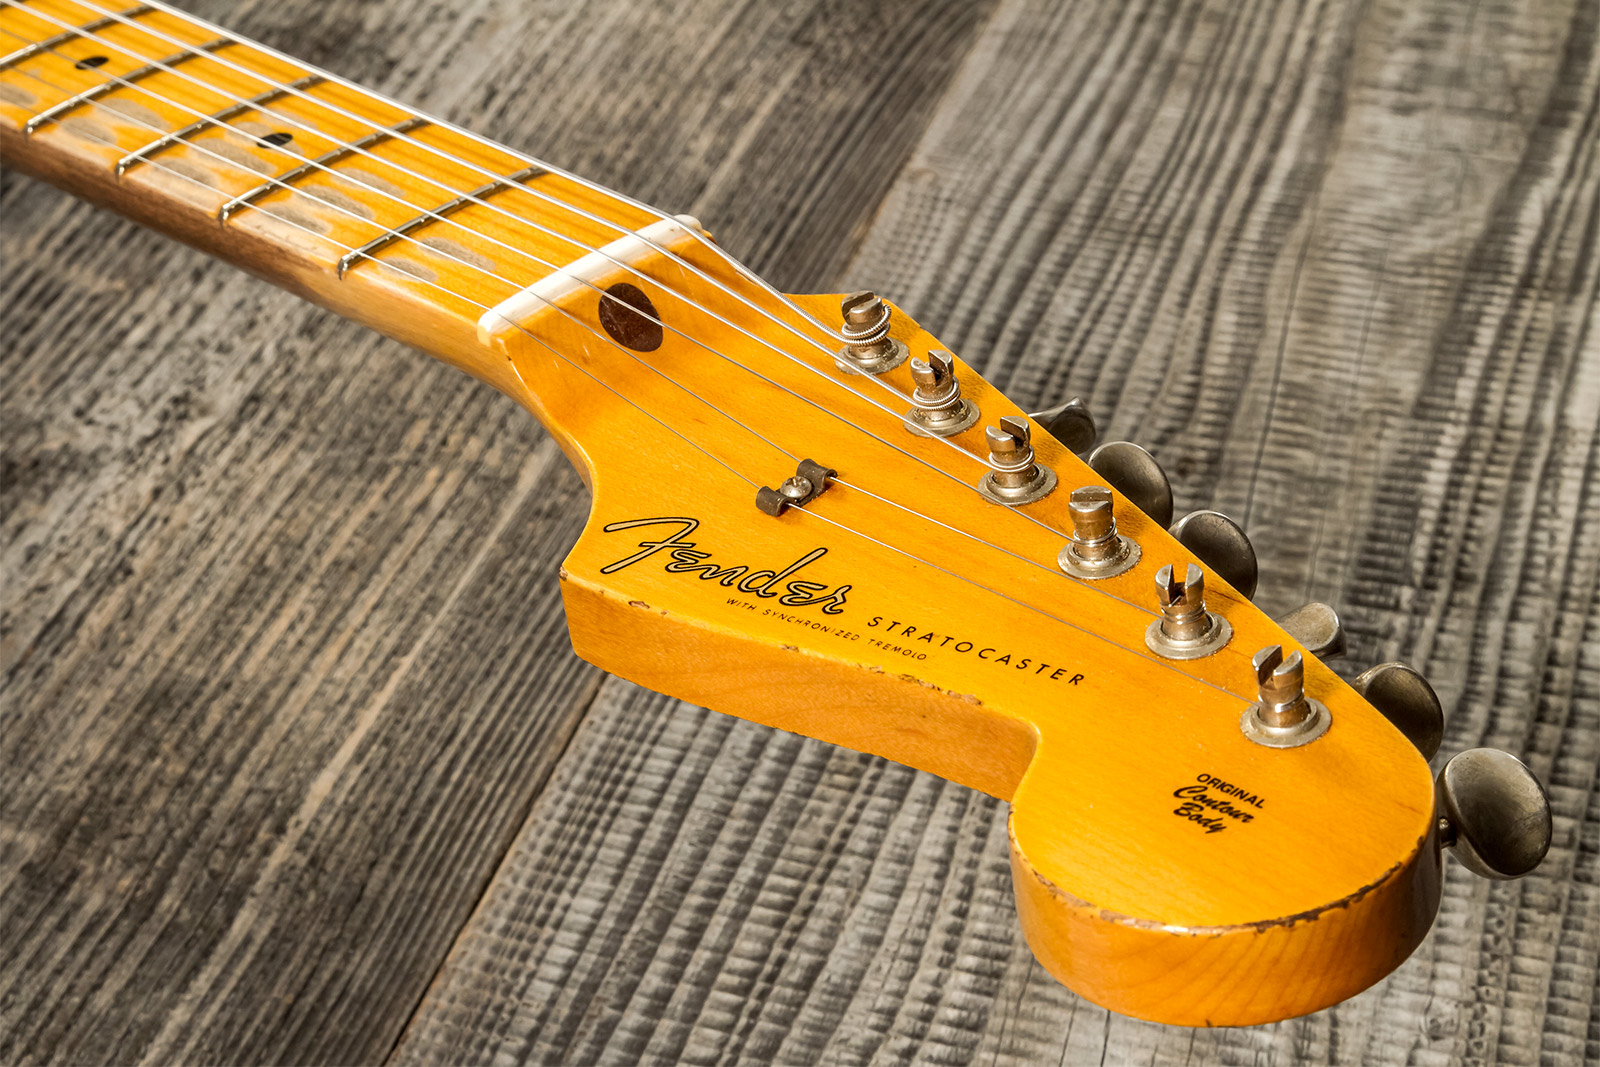 Fender Custom Shop Strat 1957 3s Trem Mn #cz571791 - Relic Wide Fade 2-color Sunburst - Str shape electric guitar - Variation 8